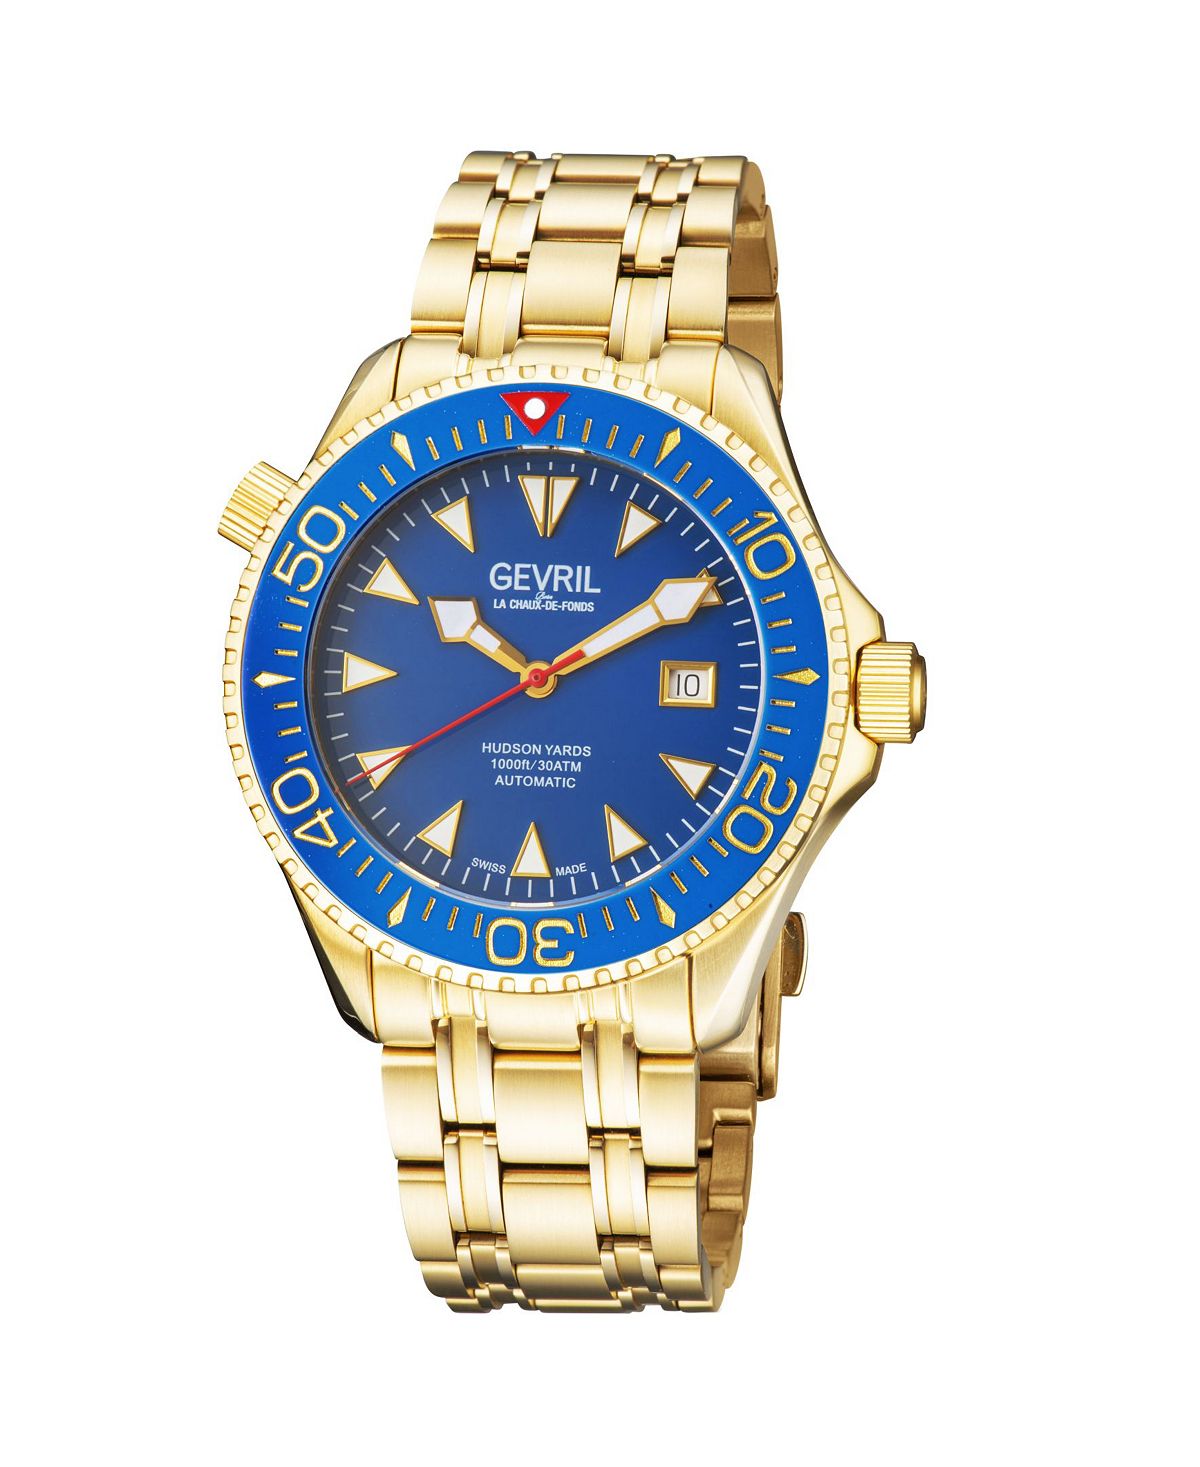 Мужские часы Hudson Yards 48805 швейцарские автоматические часы-браслет 45 мм Gevril цена и фото